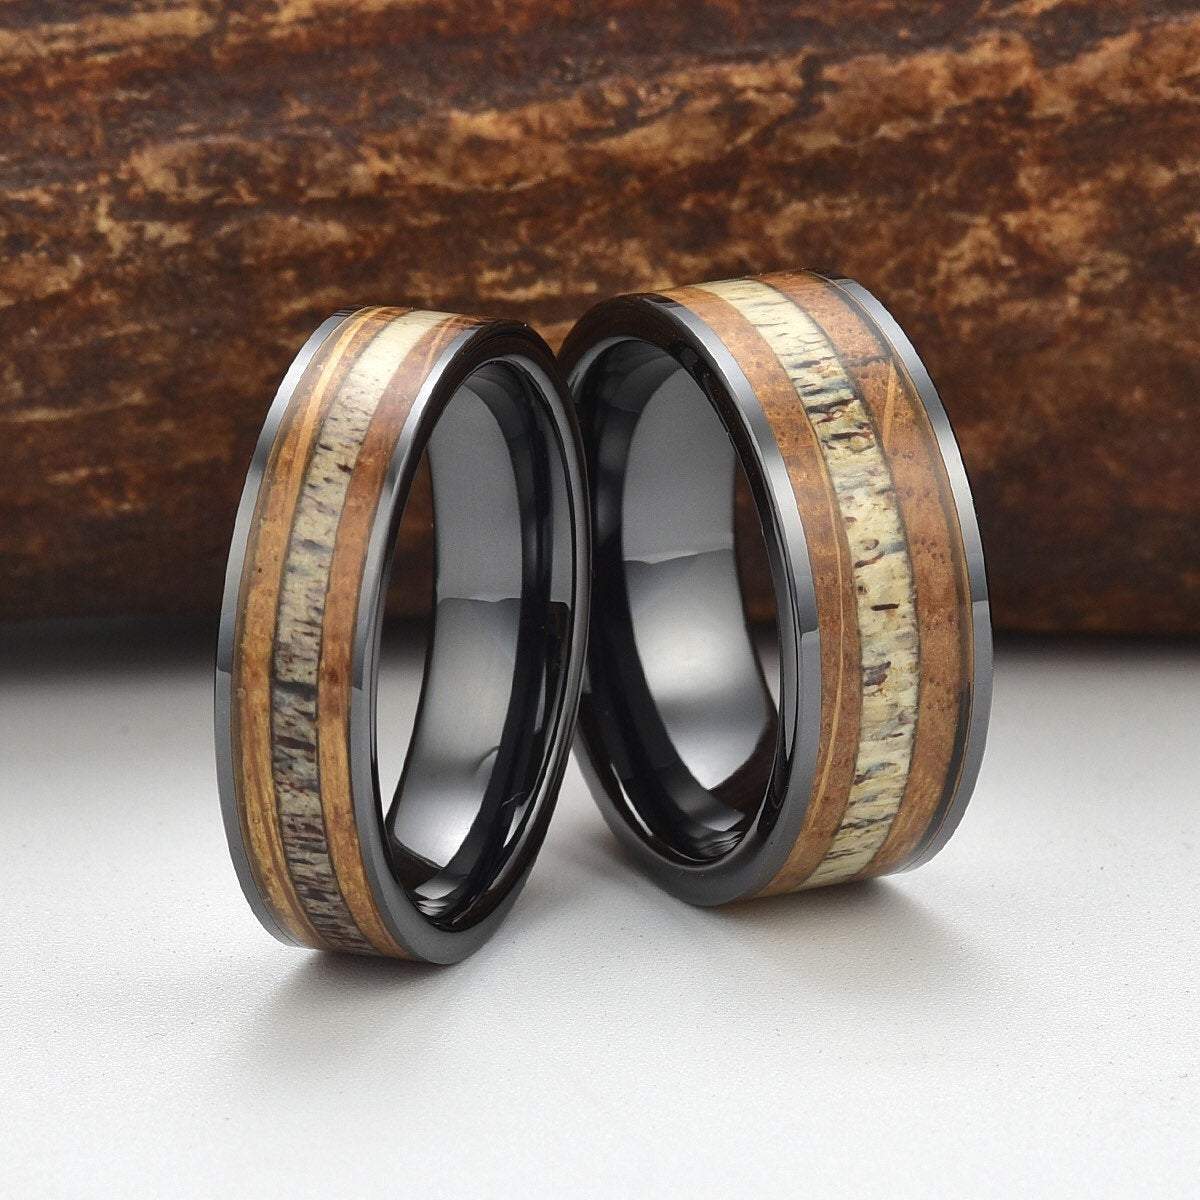 Buy Black Ceramic Obsidian Ring, Black Ceramic Ring, Obsidian Ring, Black  Wedding Band, Anniversary Ring, Men's Ring, Men's Wedding Band, Online in  India - Etsy